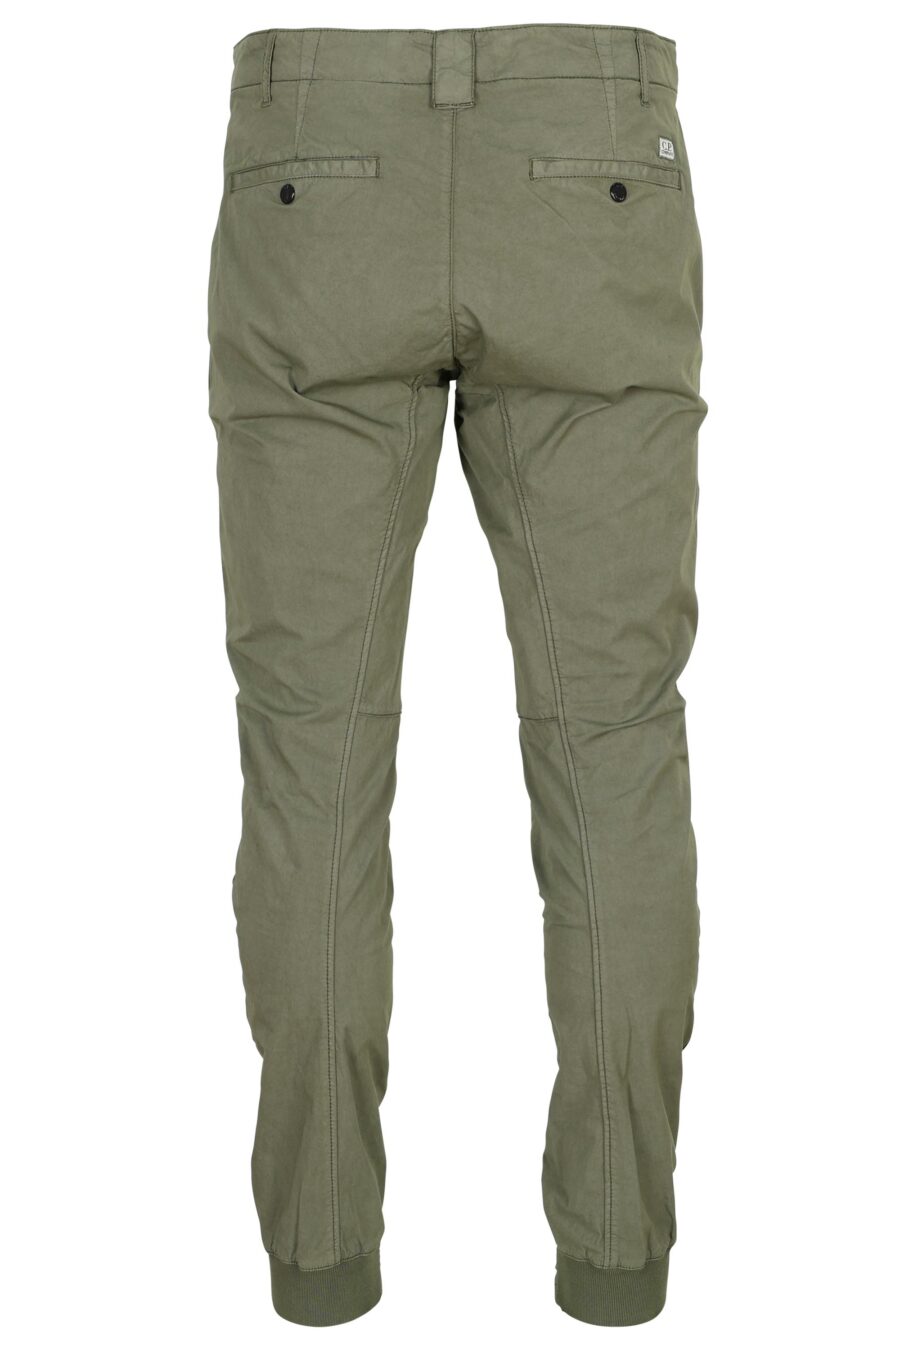 Pantalon ergonomique gris-vert avec mini-logo - 7620943806939 1